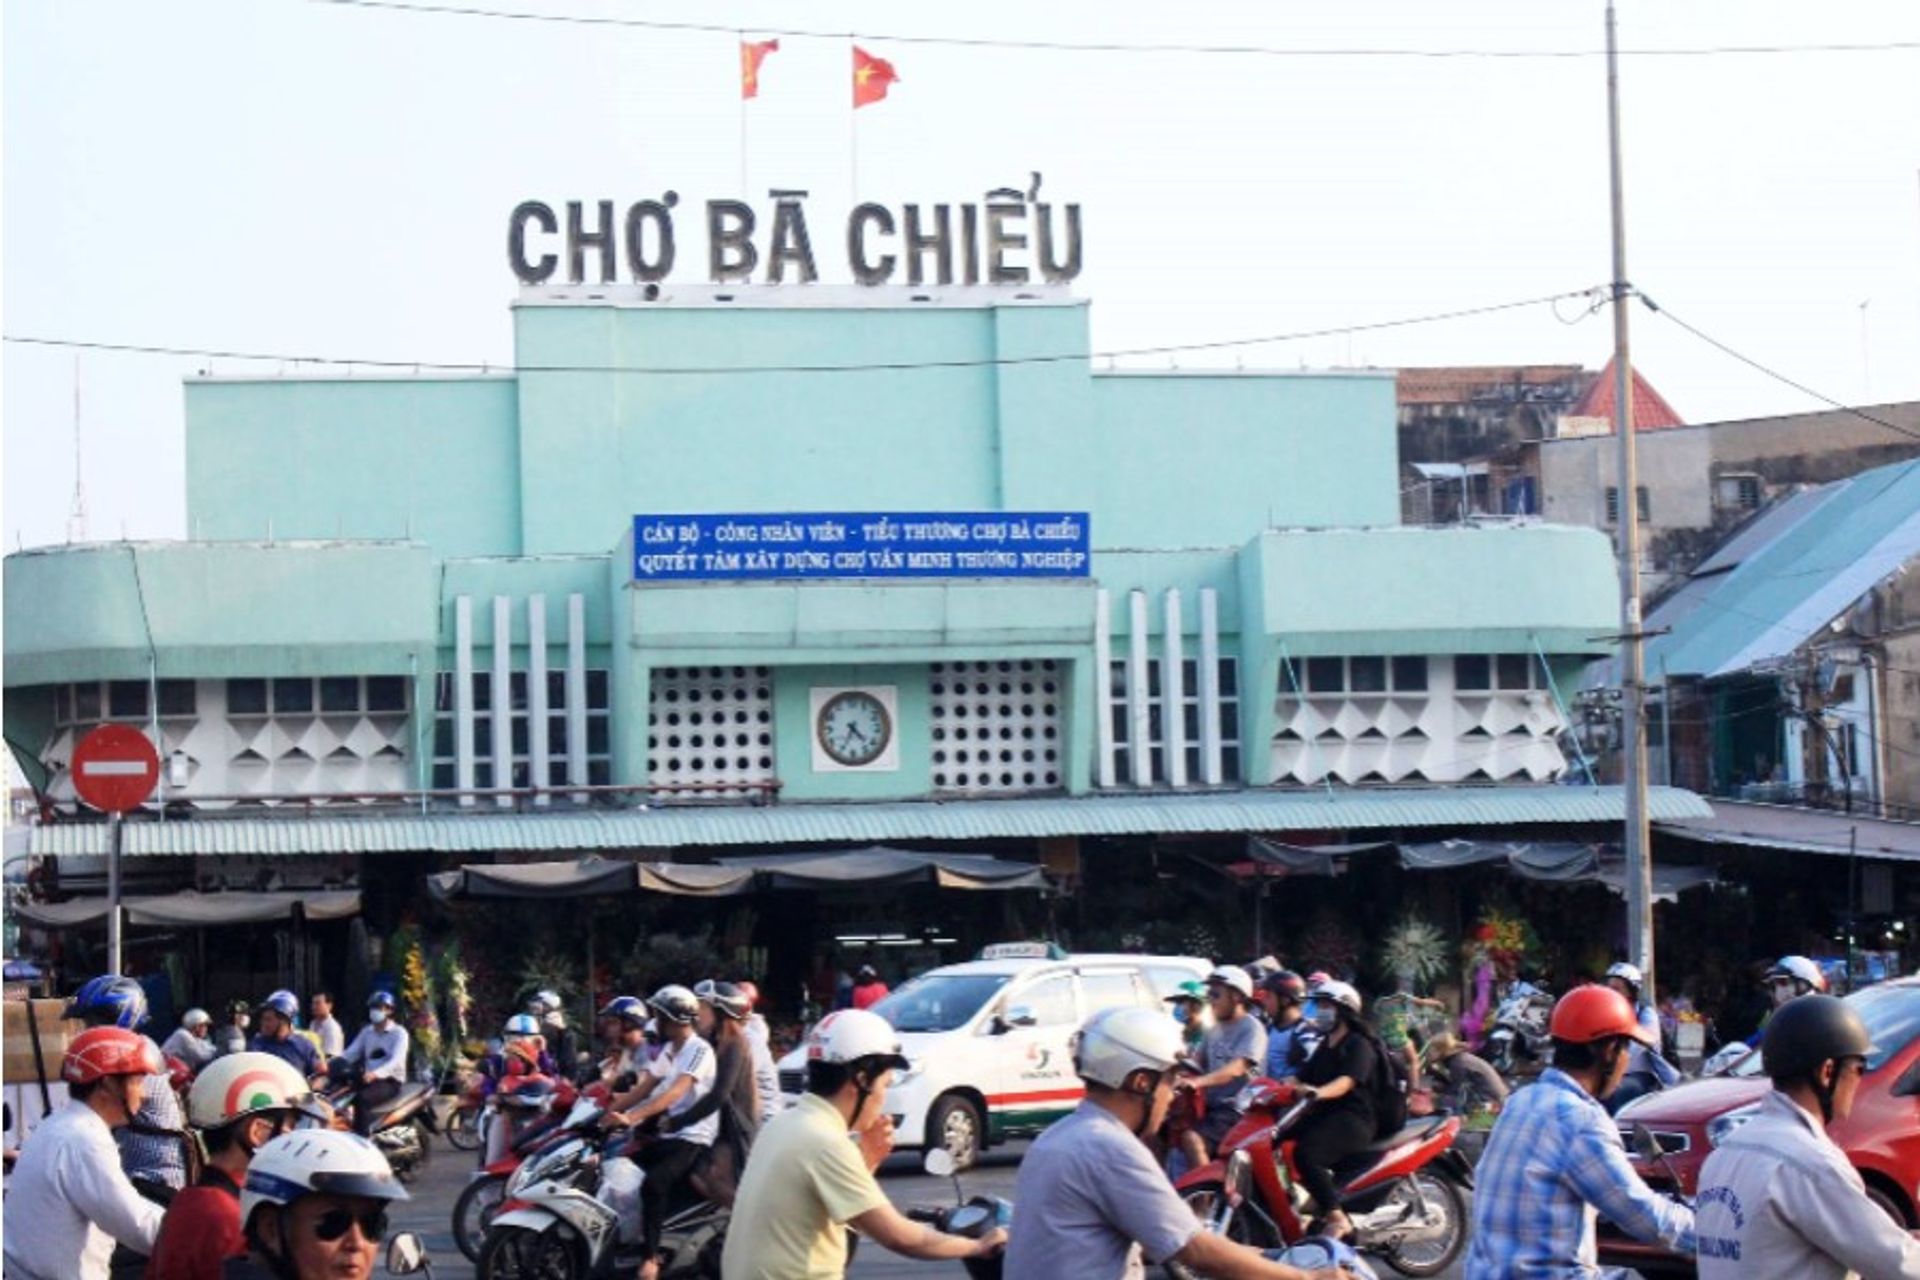 Đây cũng là một địa điểm không thể bỏ qua khi tham quan những khu chợ nổi tiêng nhất Sài Gòn.